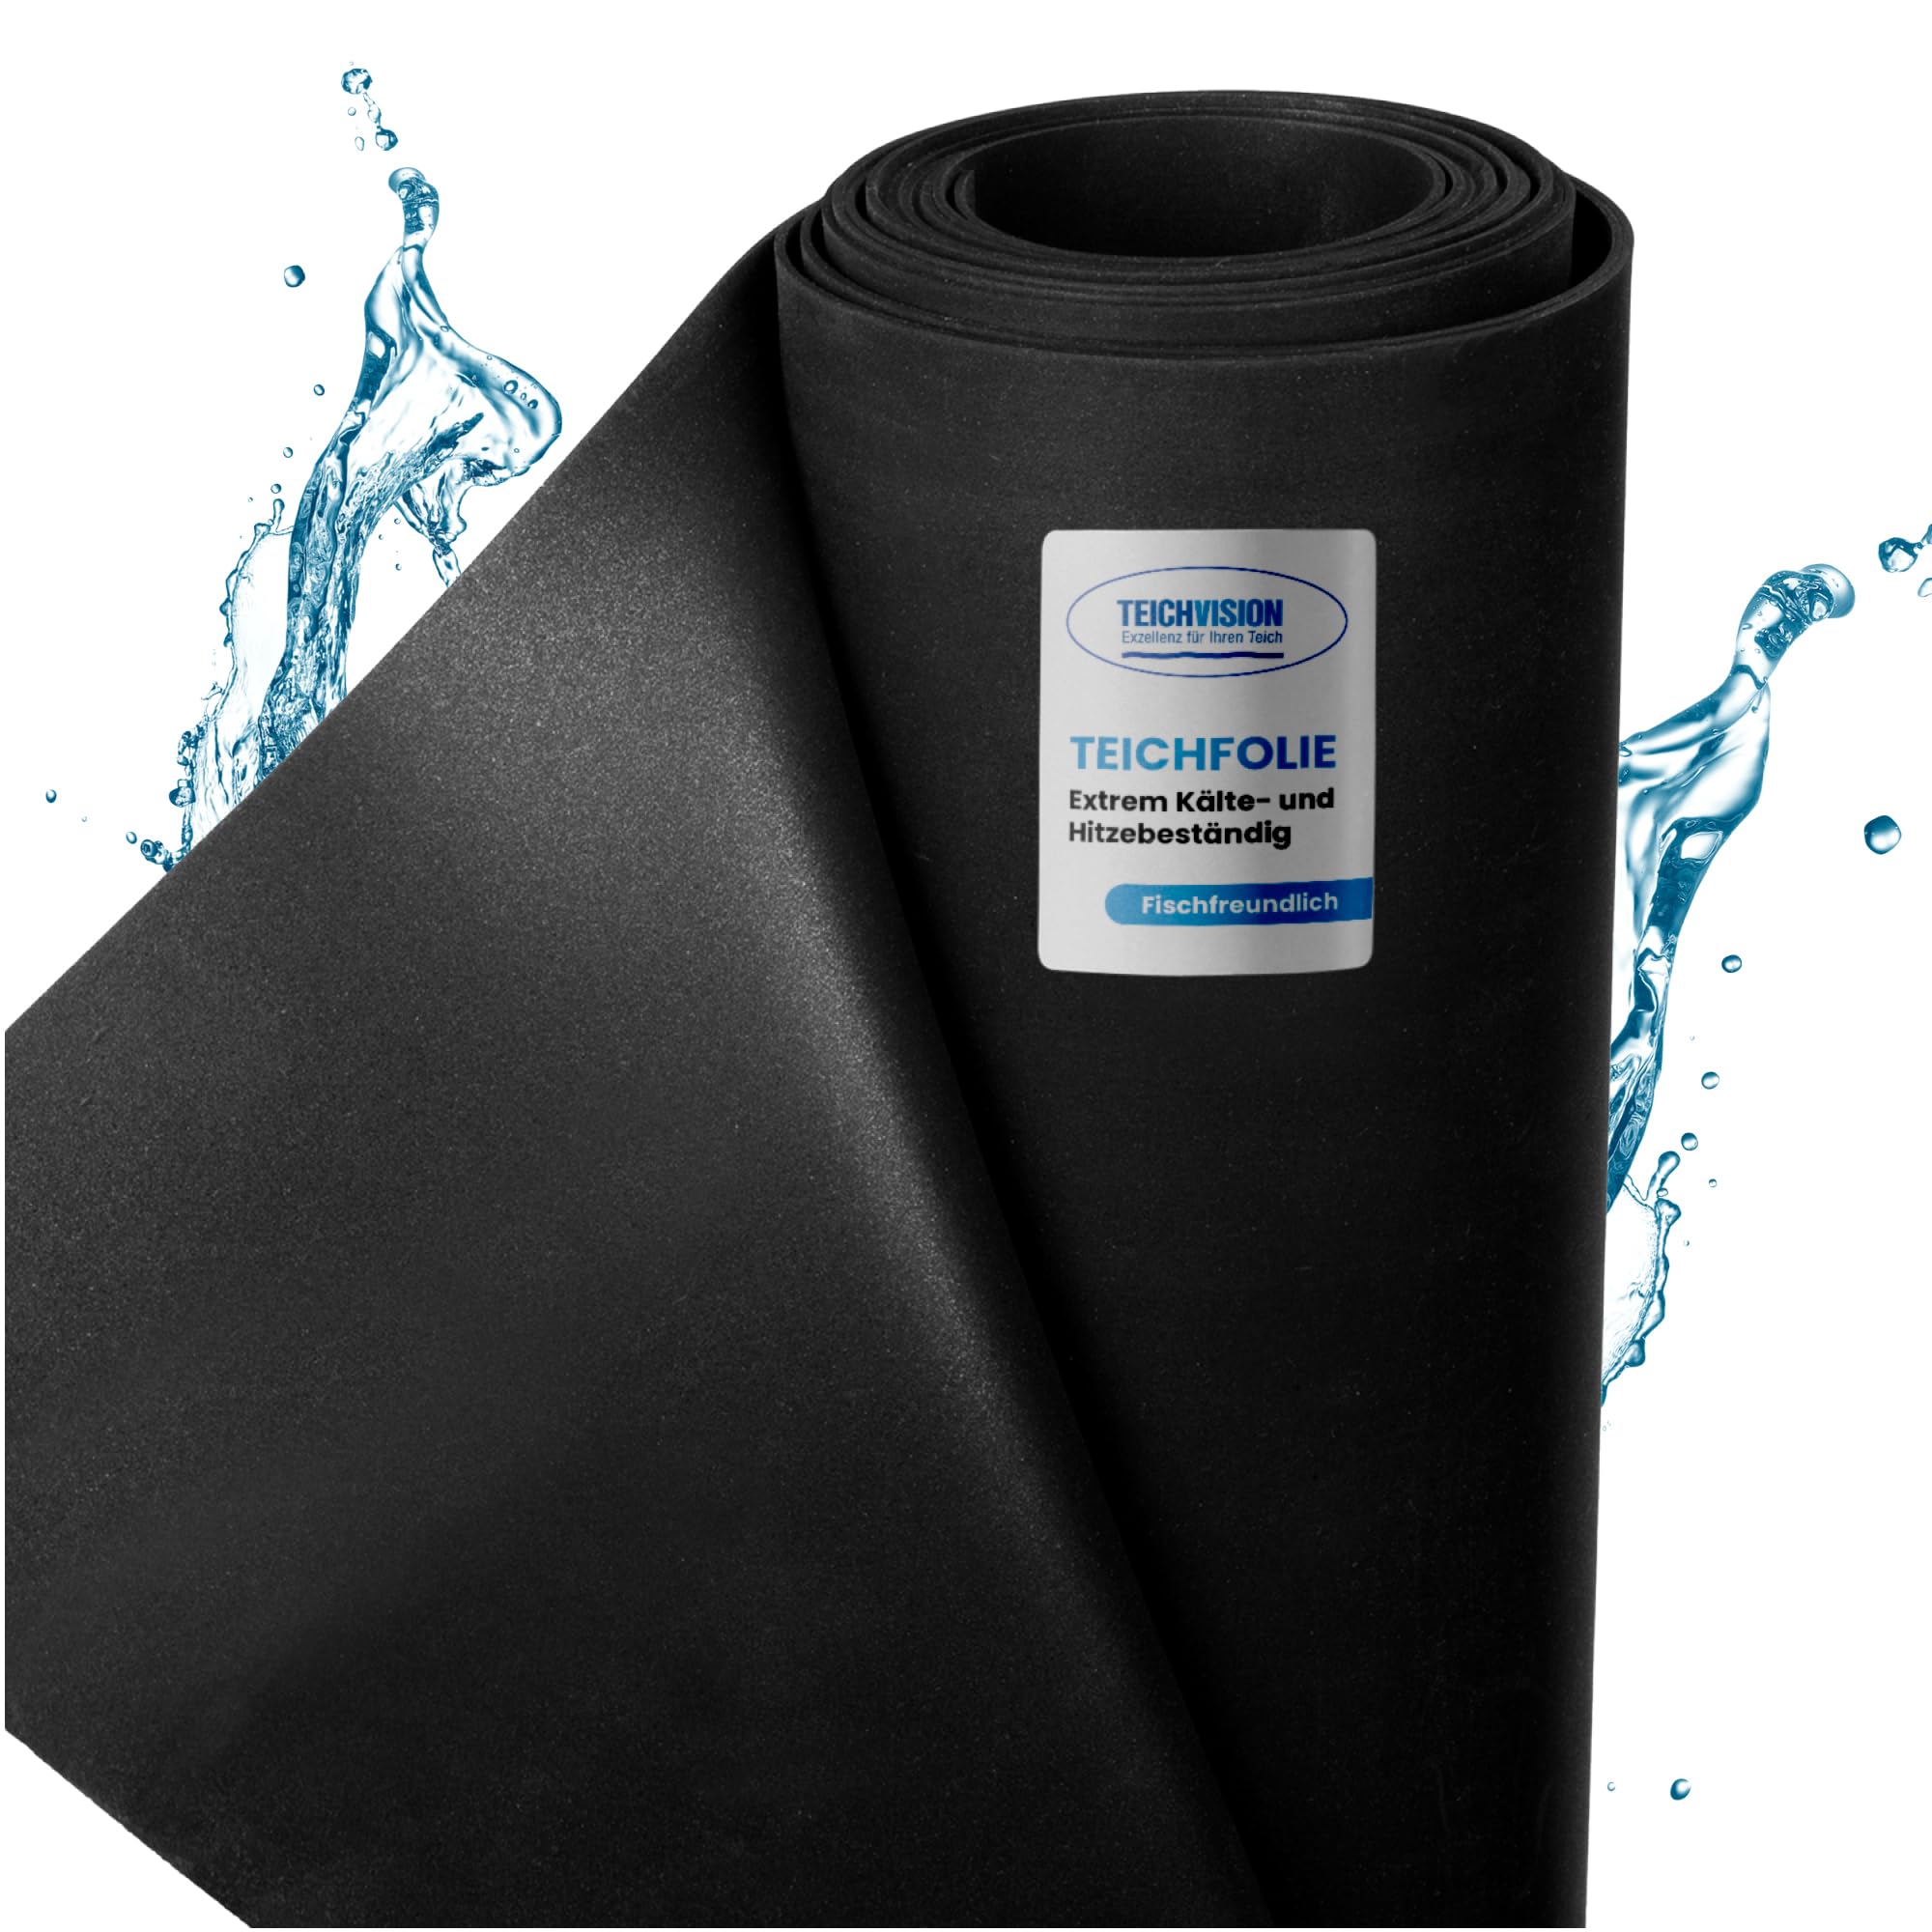 TeichVision - Premium EPDM Teichfolie Stärke 1 mm - 7,62 m x 2 m/naturgerechte EPDM Folie schwarz - besonders langlebig/auch geeignet als Hochbeet Folie wasserdicht